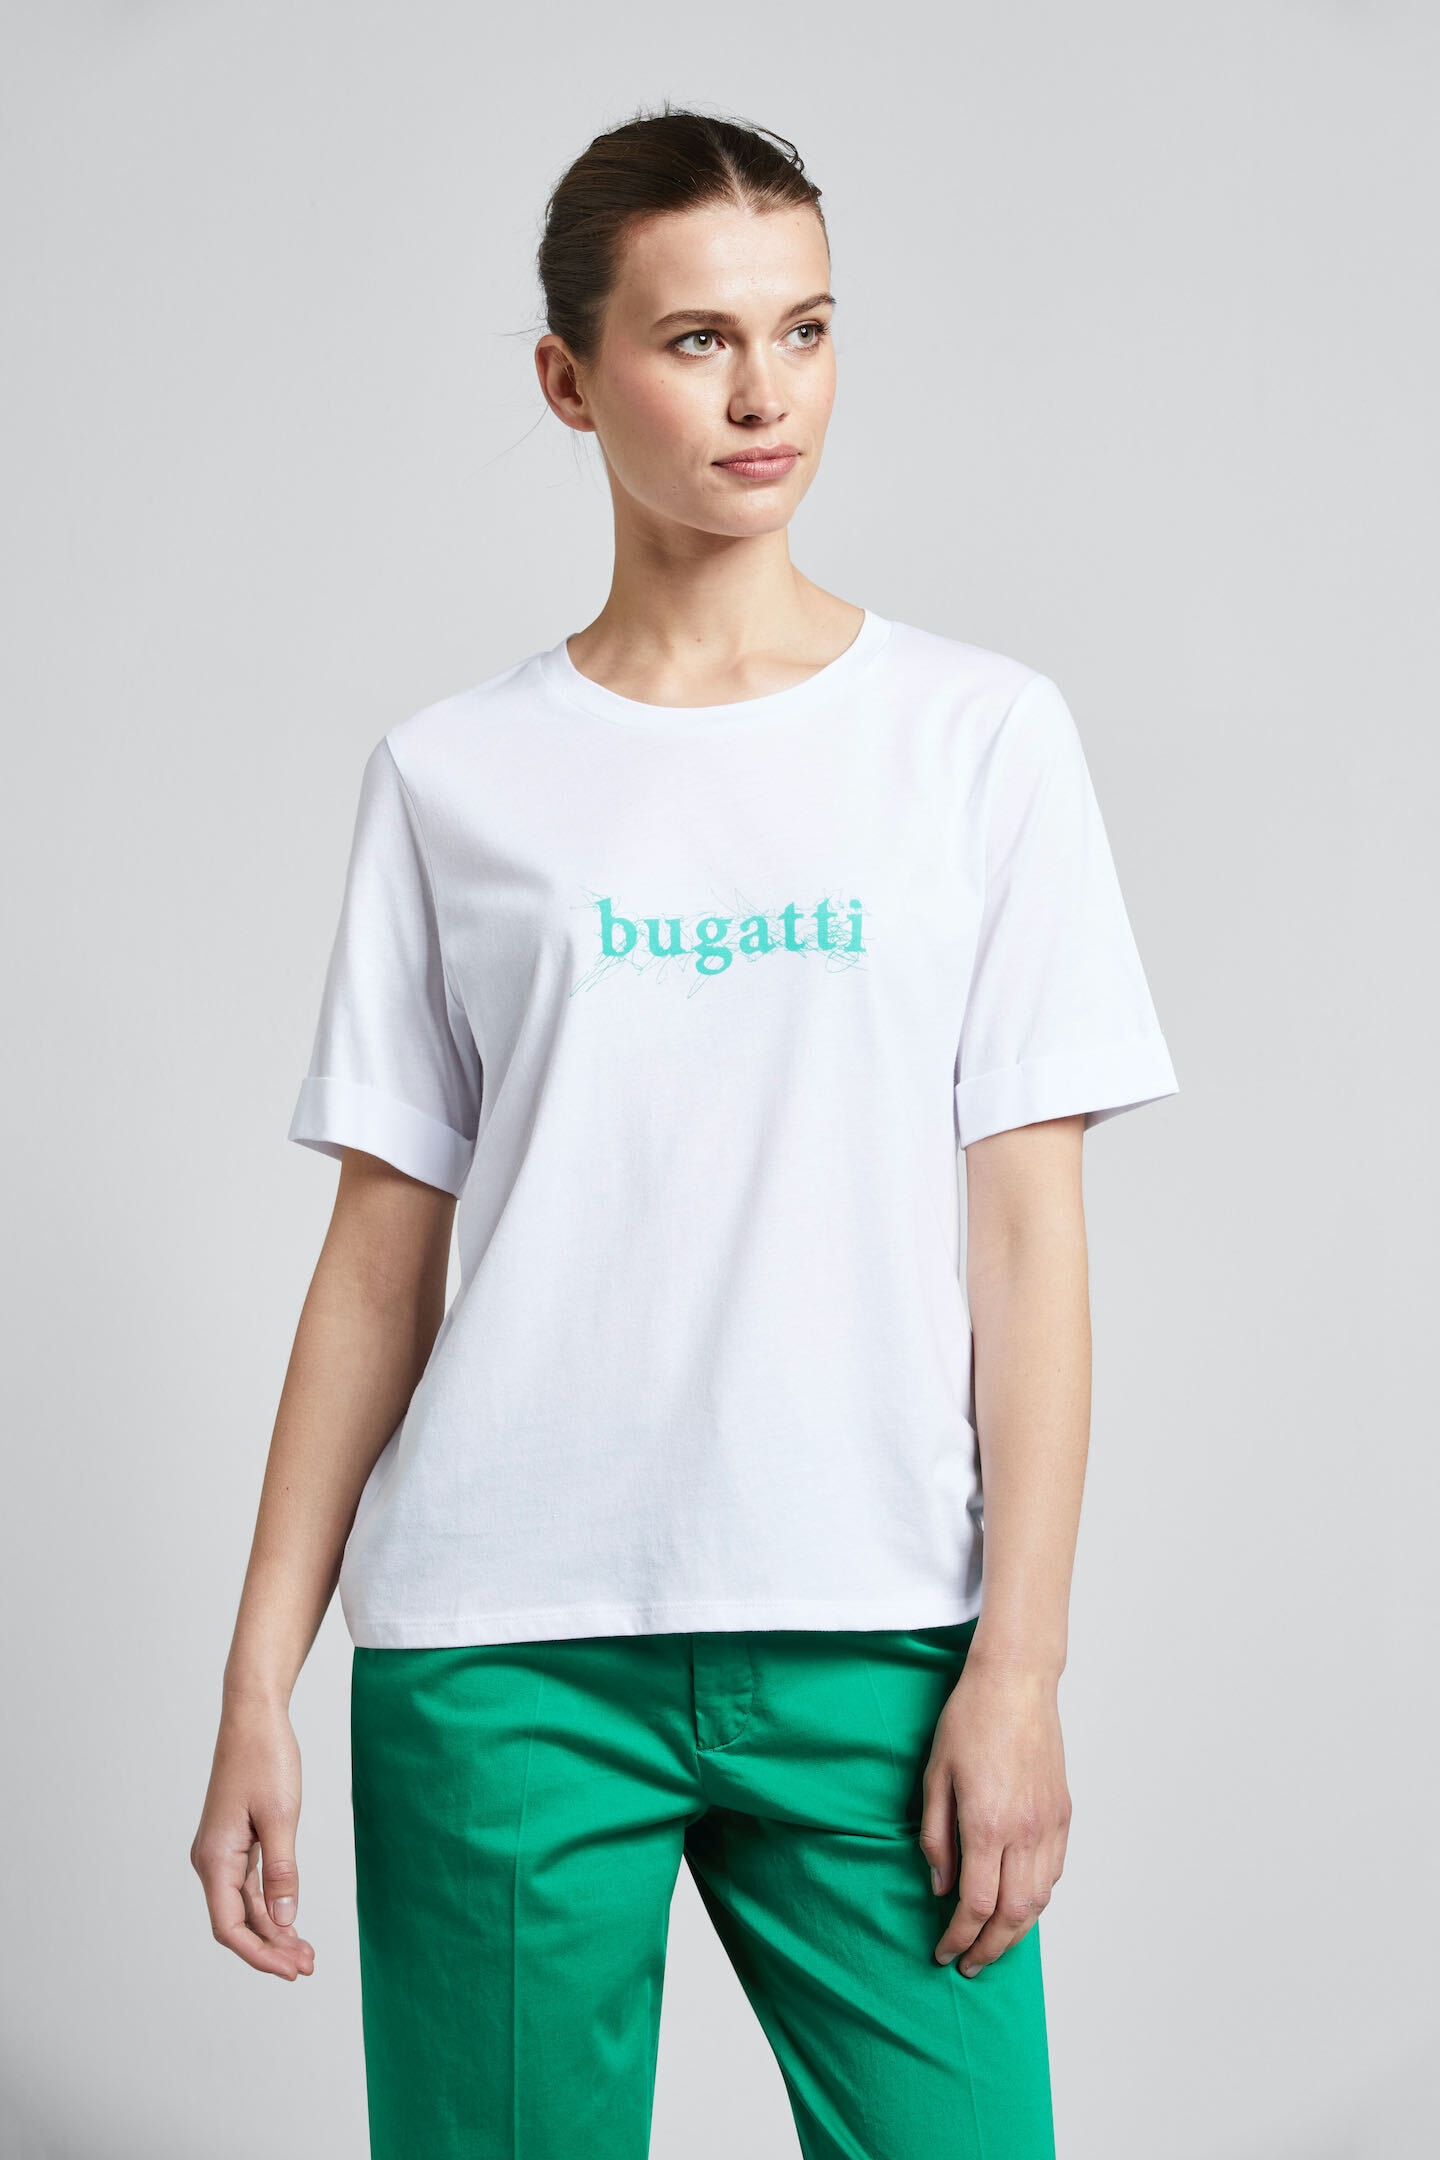 bugatti T-Shirt, aus einer hochwertigen Baumwoll-Modalmischung